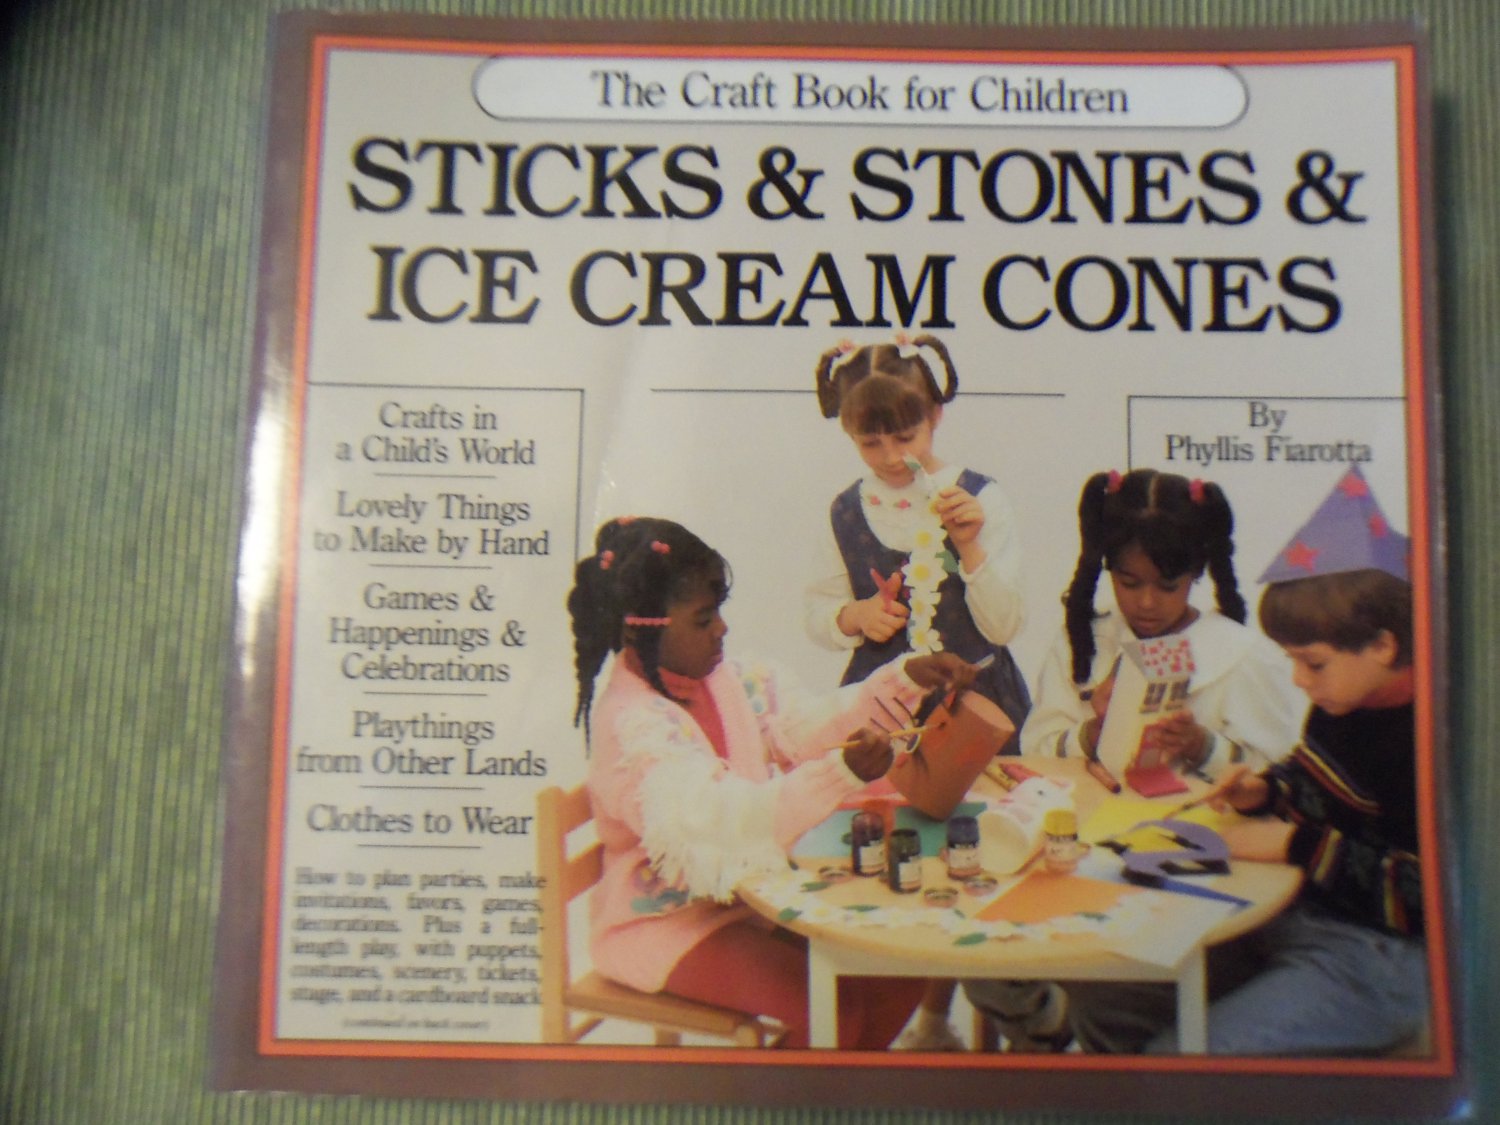 Sticks & Stones & Ice Cream Cones The Craft Book for Children Phyllis Fiarotta locationB22